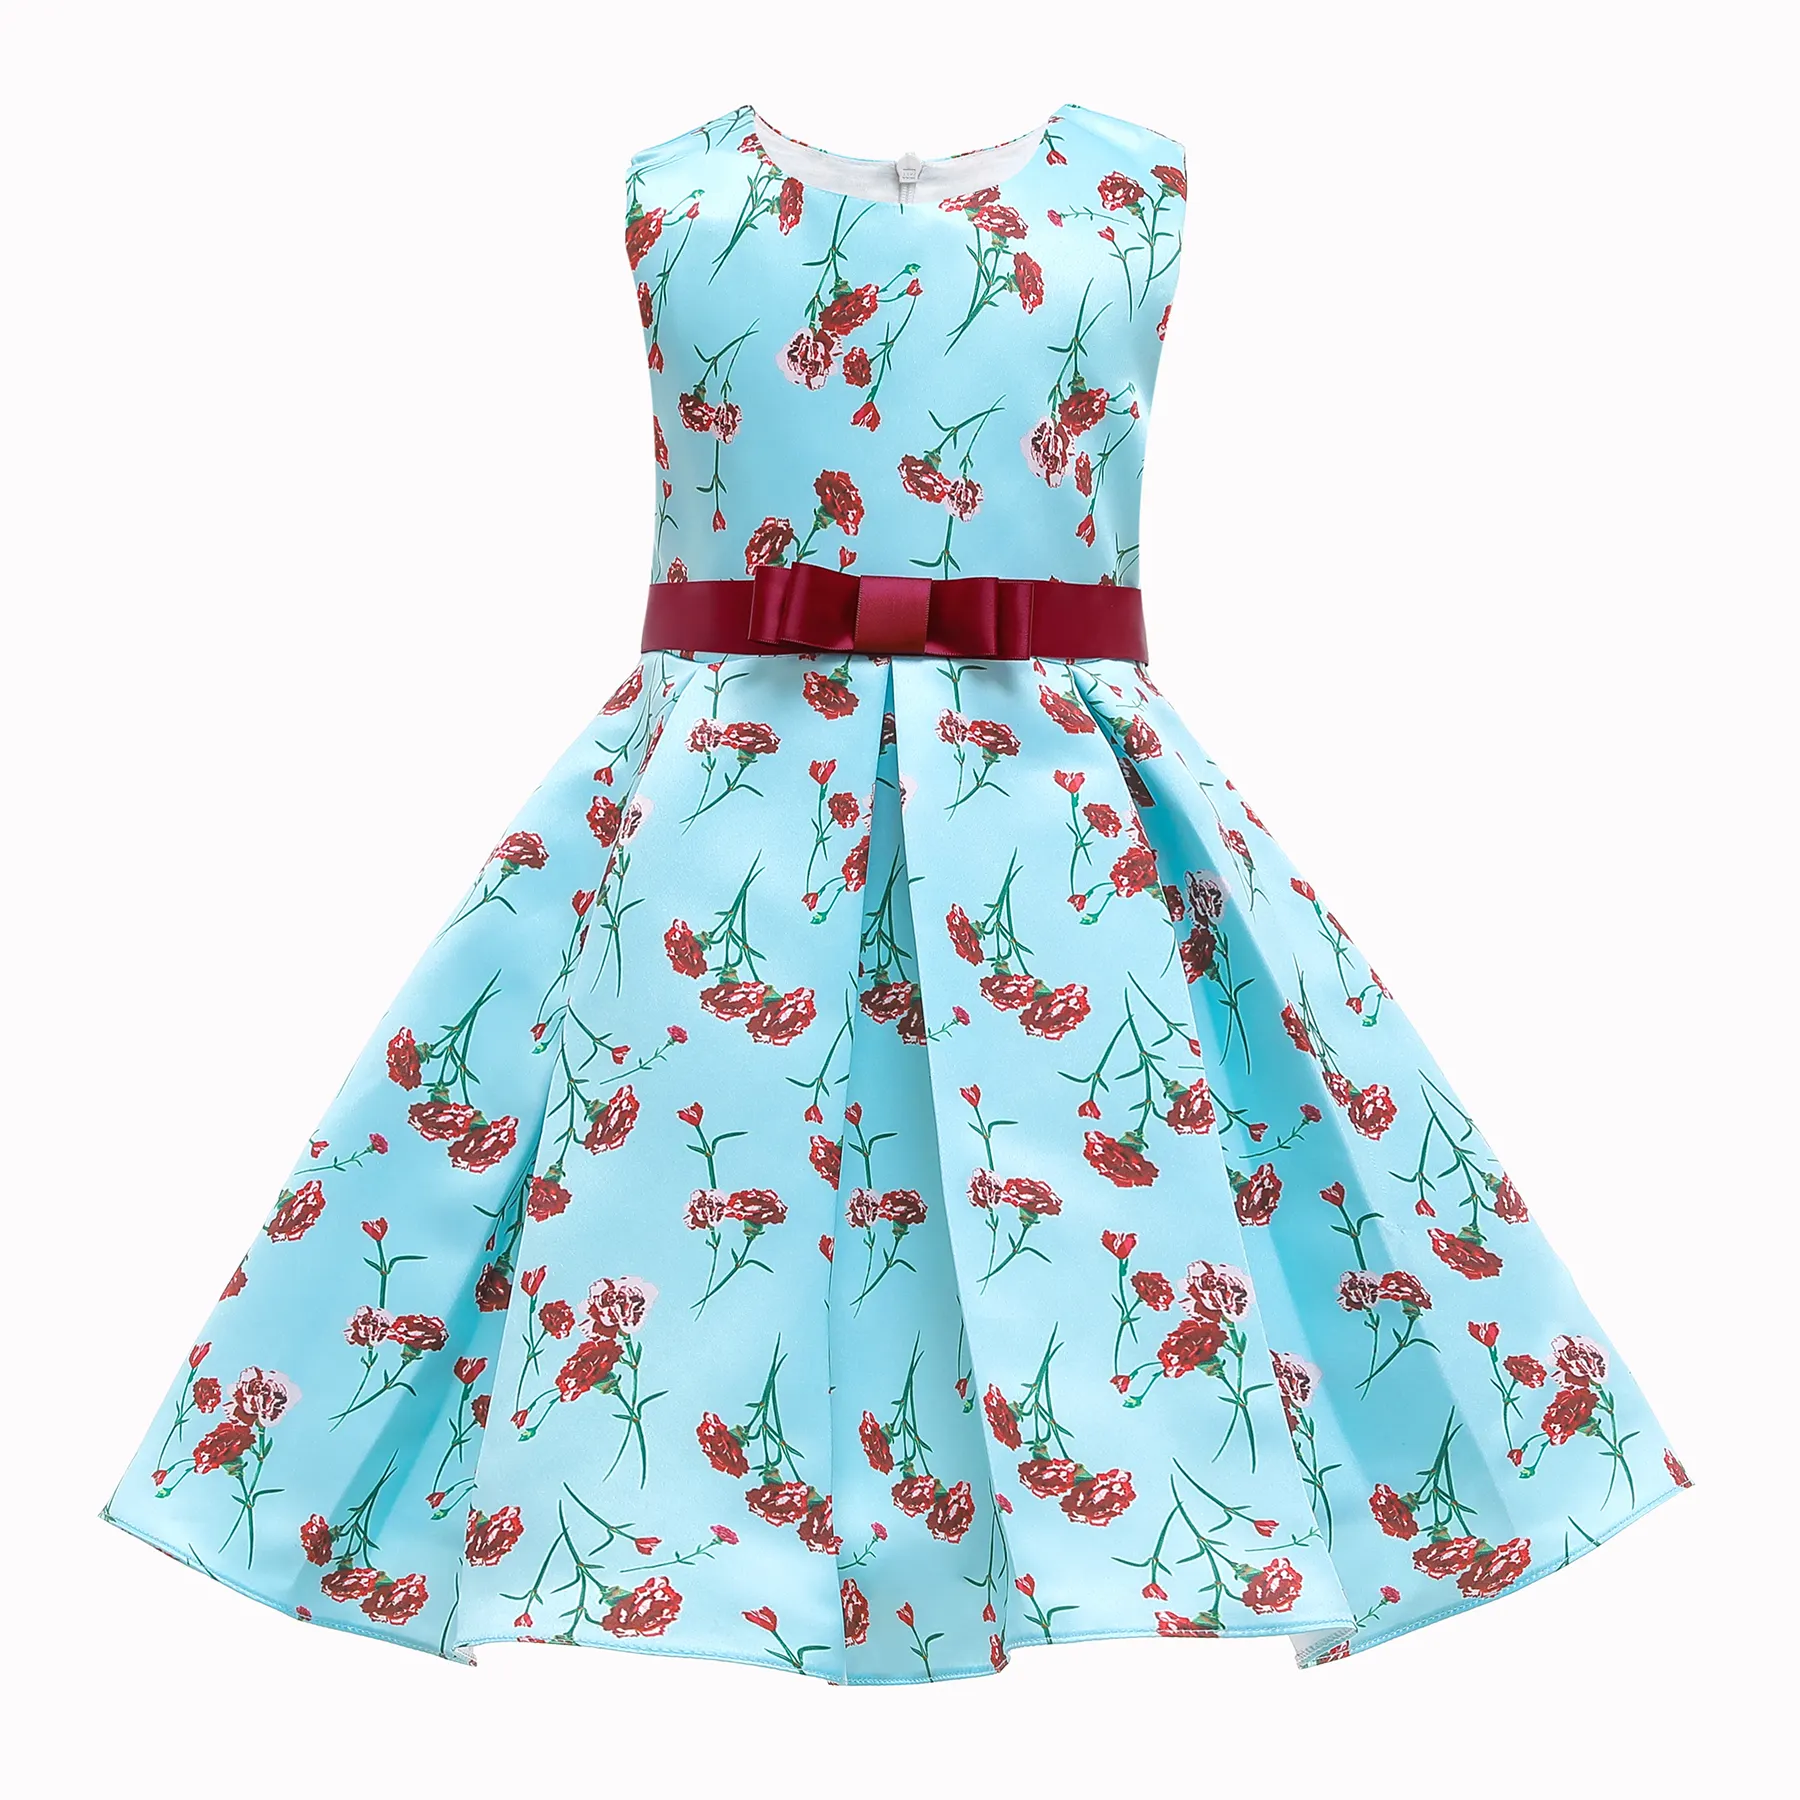 Girls Dress Up Toddler Kids Sleeveless Flower Dress Baby Print Summer Casual Clothes A104